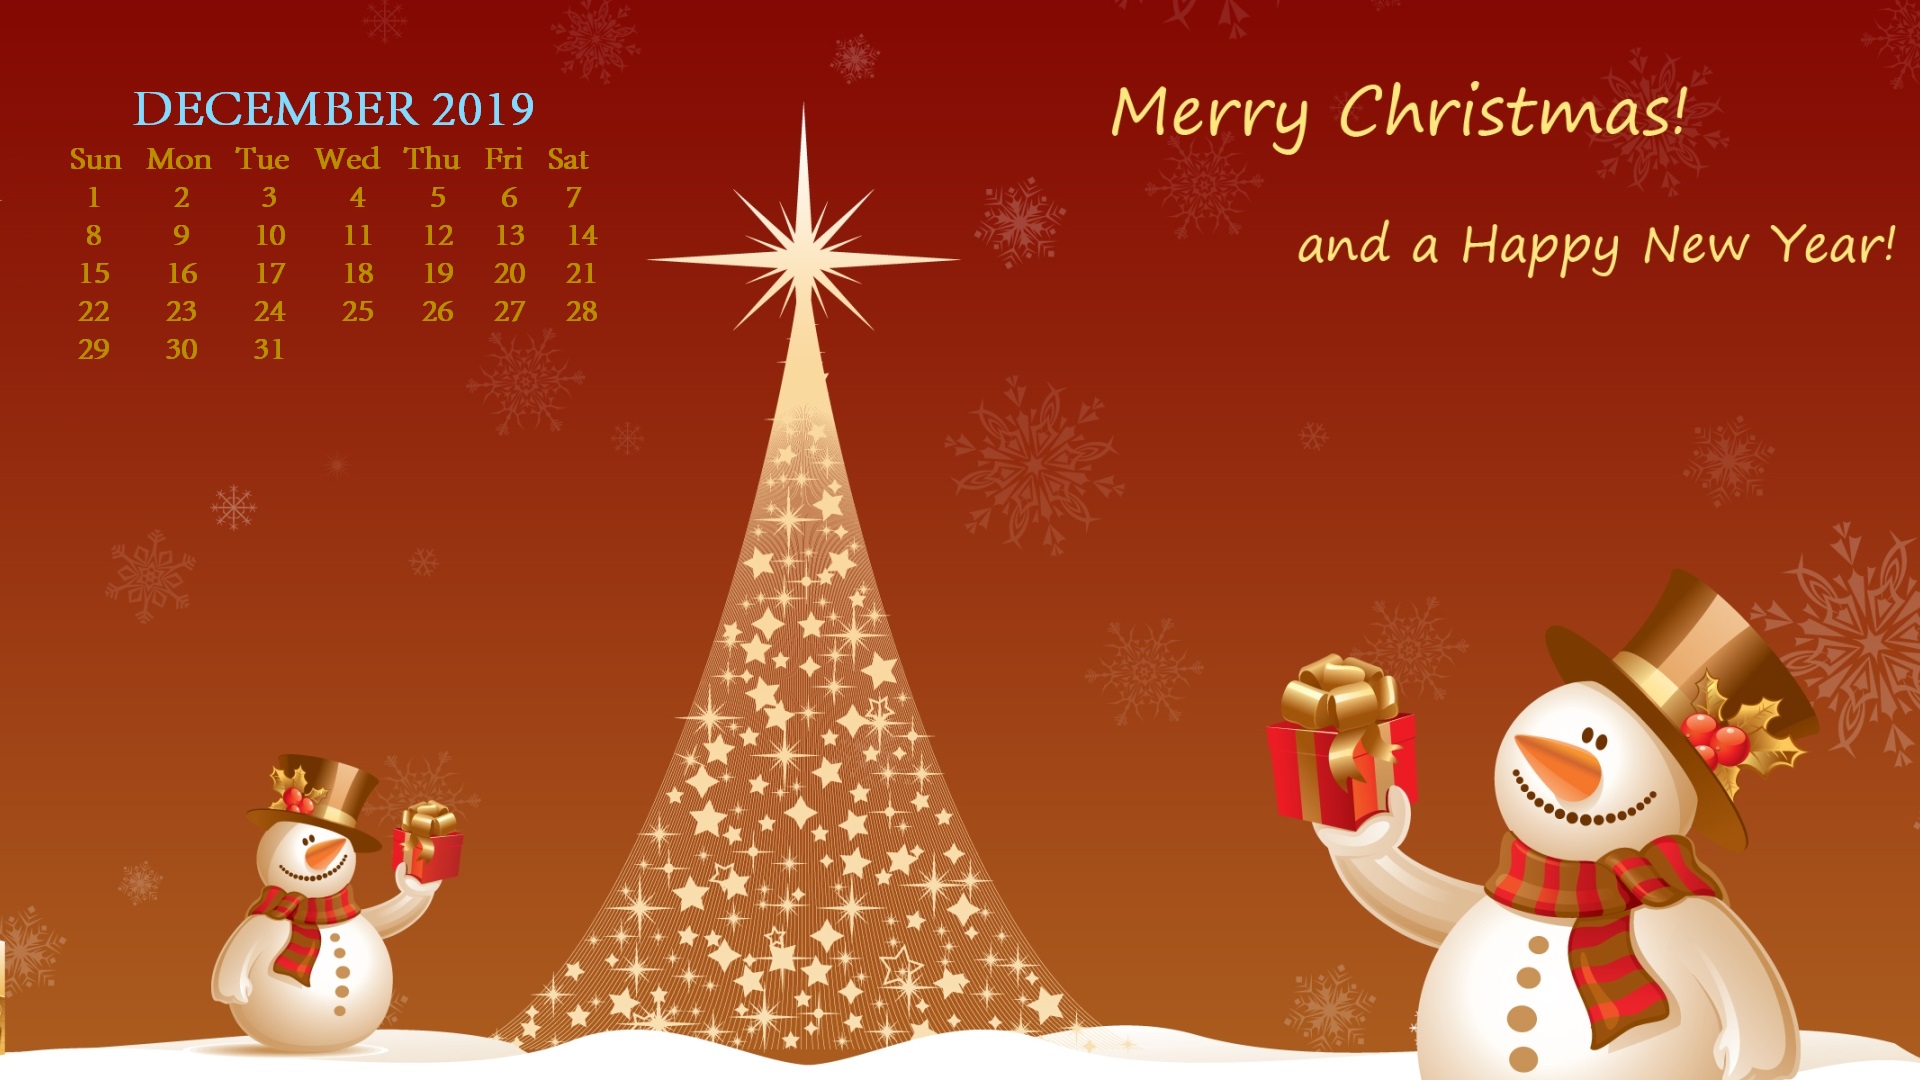 December 2019 Hd Desktop Calendar Wallpaper - December Desktop Calendar 2019 - HD Wallpaper 